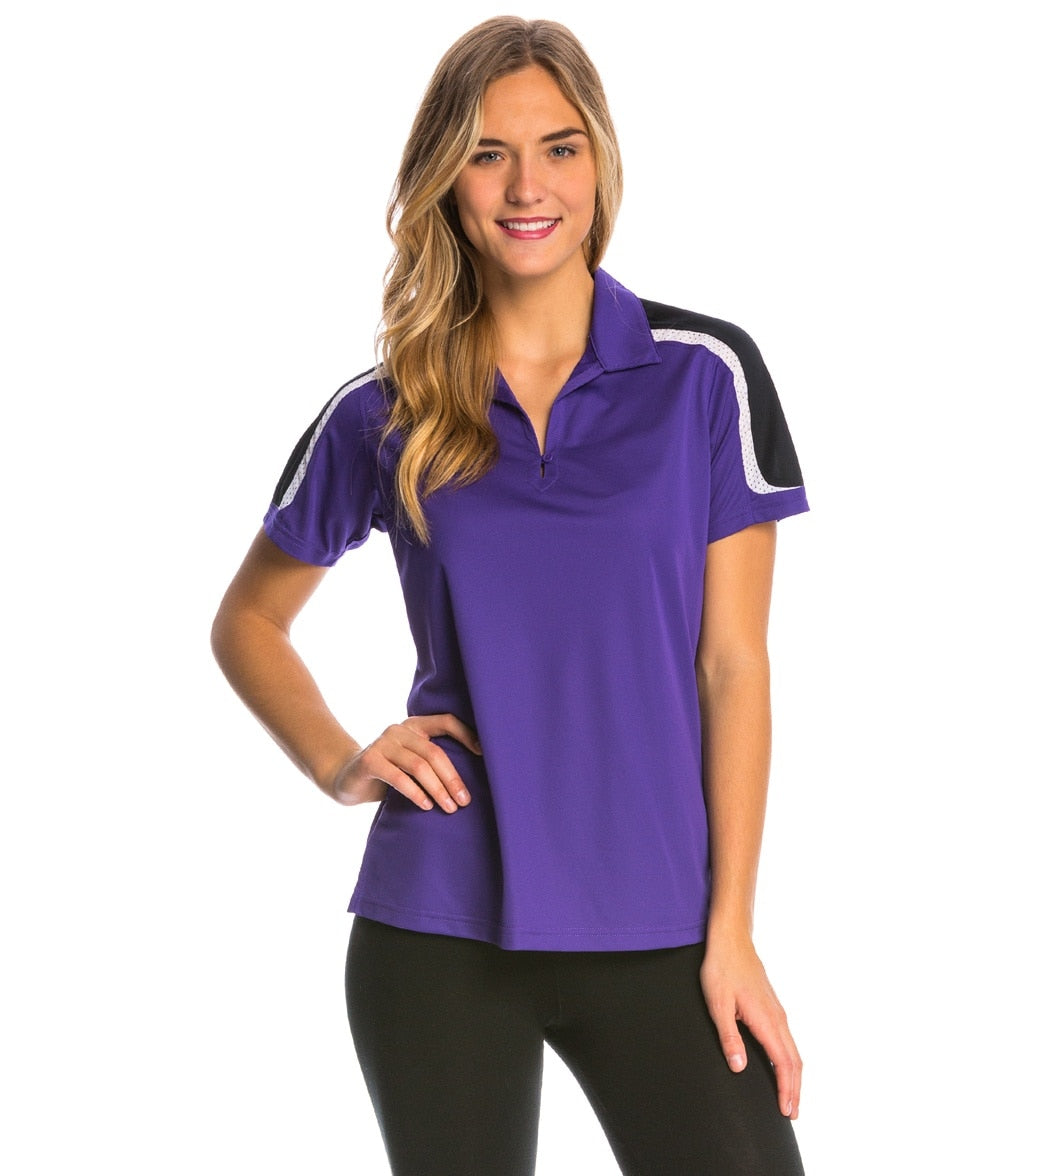 Women's Tech Polo Shirt - Purple/Black/White 3Xl Polyester - Swimoutlet.com